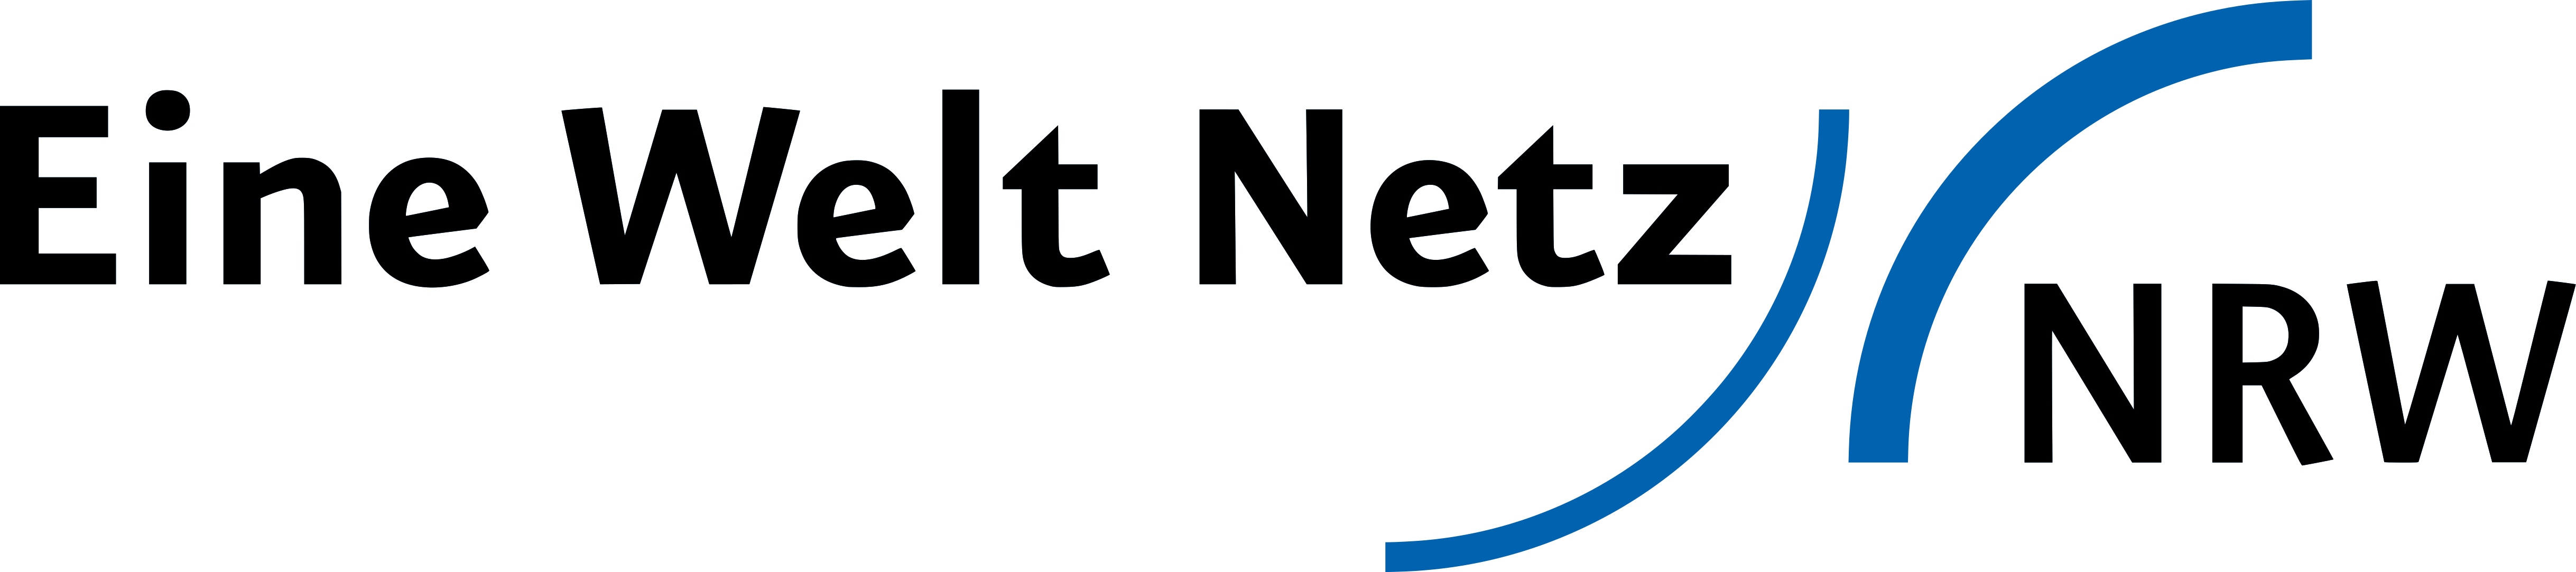 Logo Eine Welt Netz NRW. Quelle: Eine Welt Netz NRW